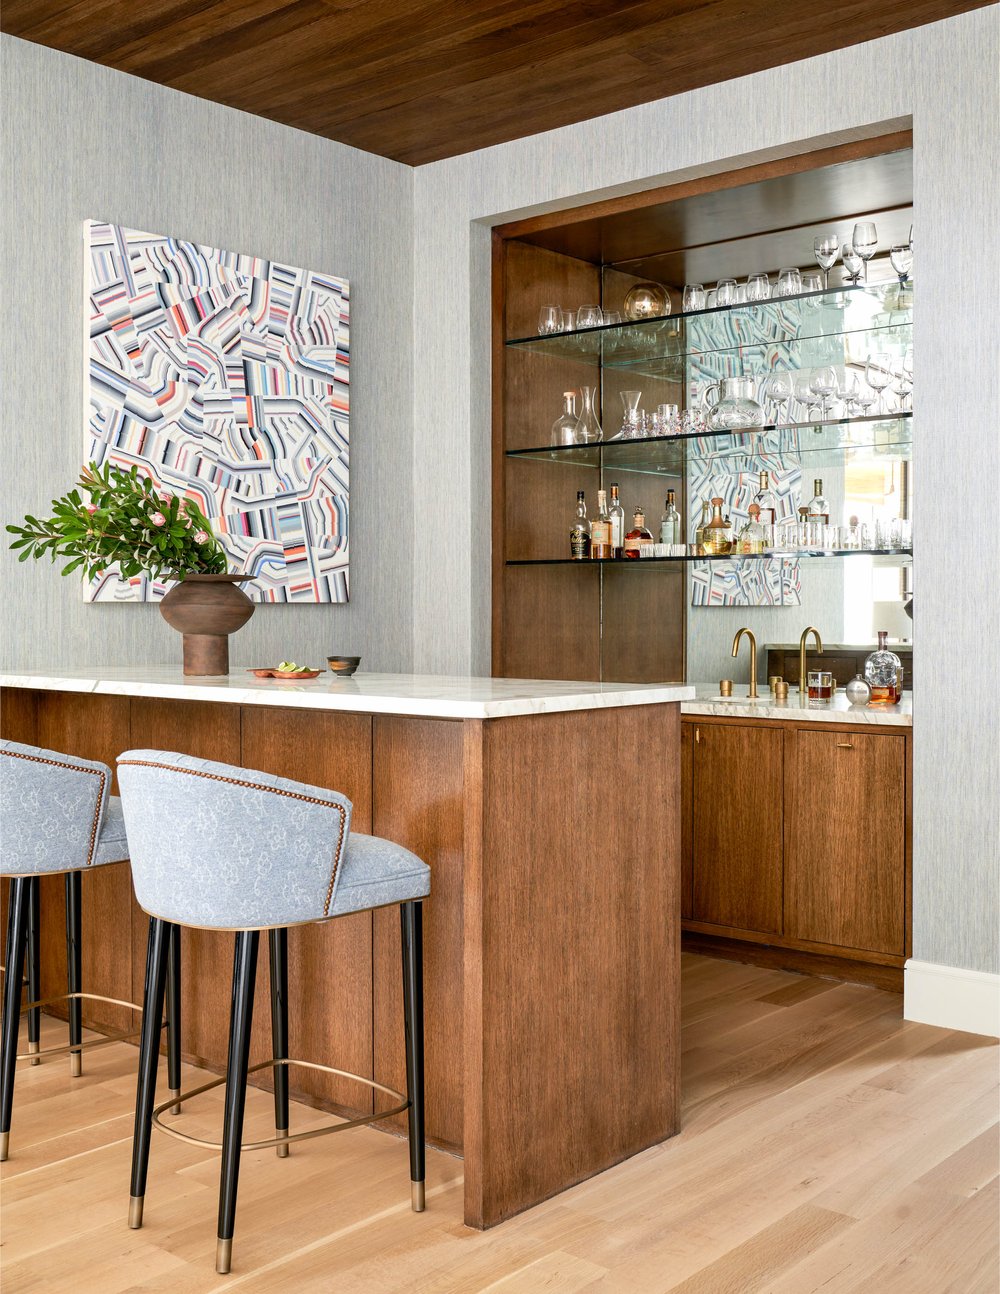 Jenkins Interiors - Nathan Schroder Photographer -bar - wet bar - bar stools - midcentury modern